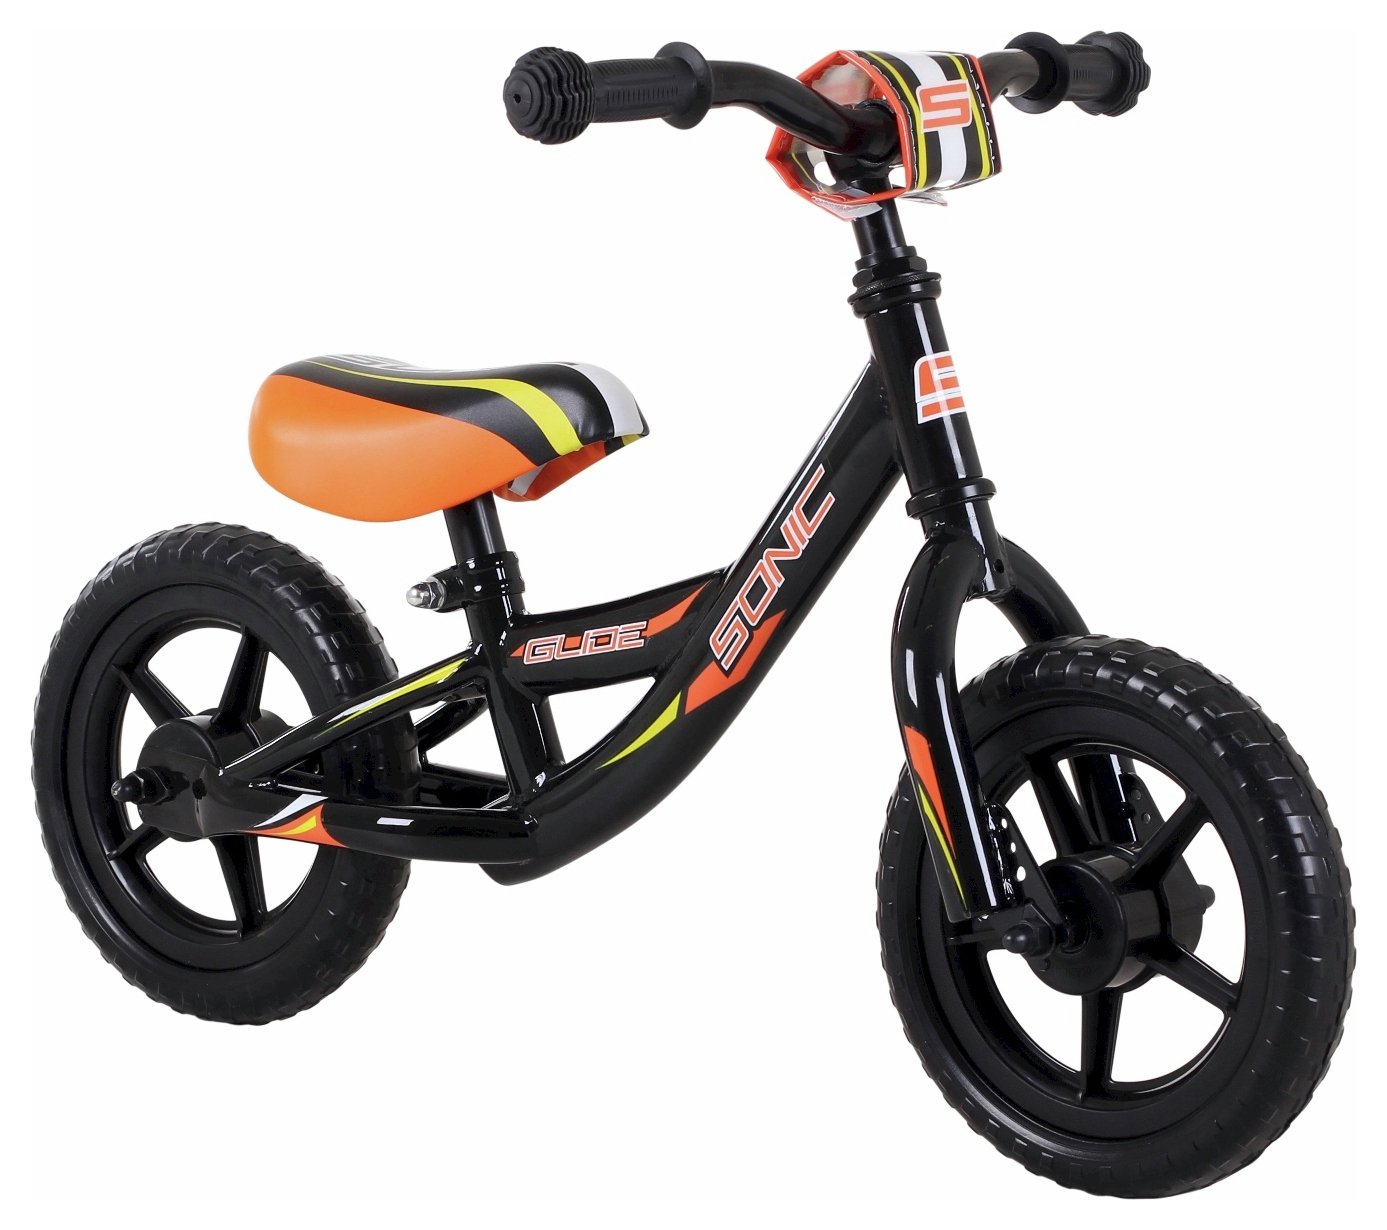 Sonic Glide Orange 10 inch Wheel Size Kids Balance Bike